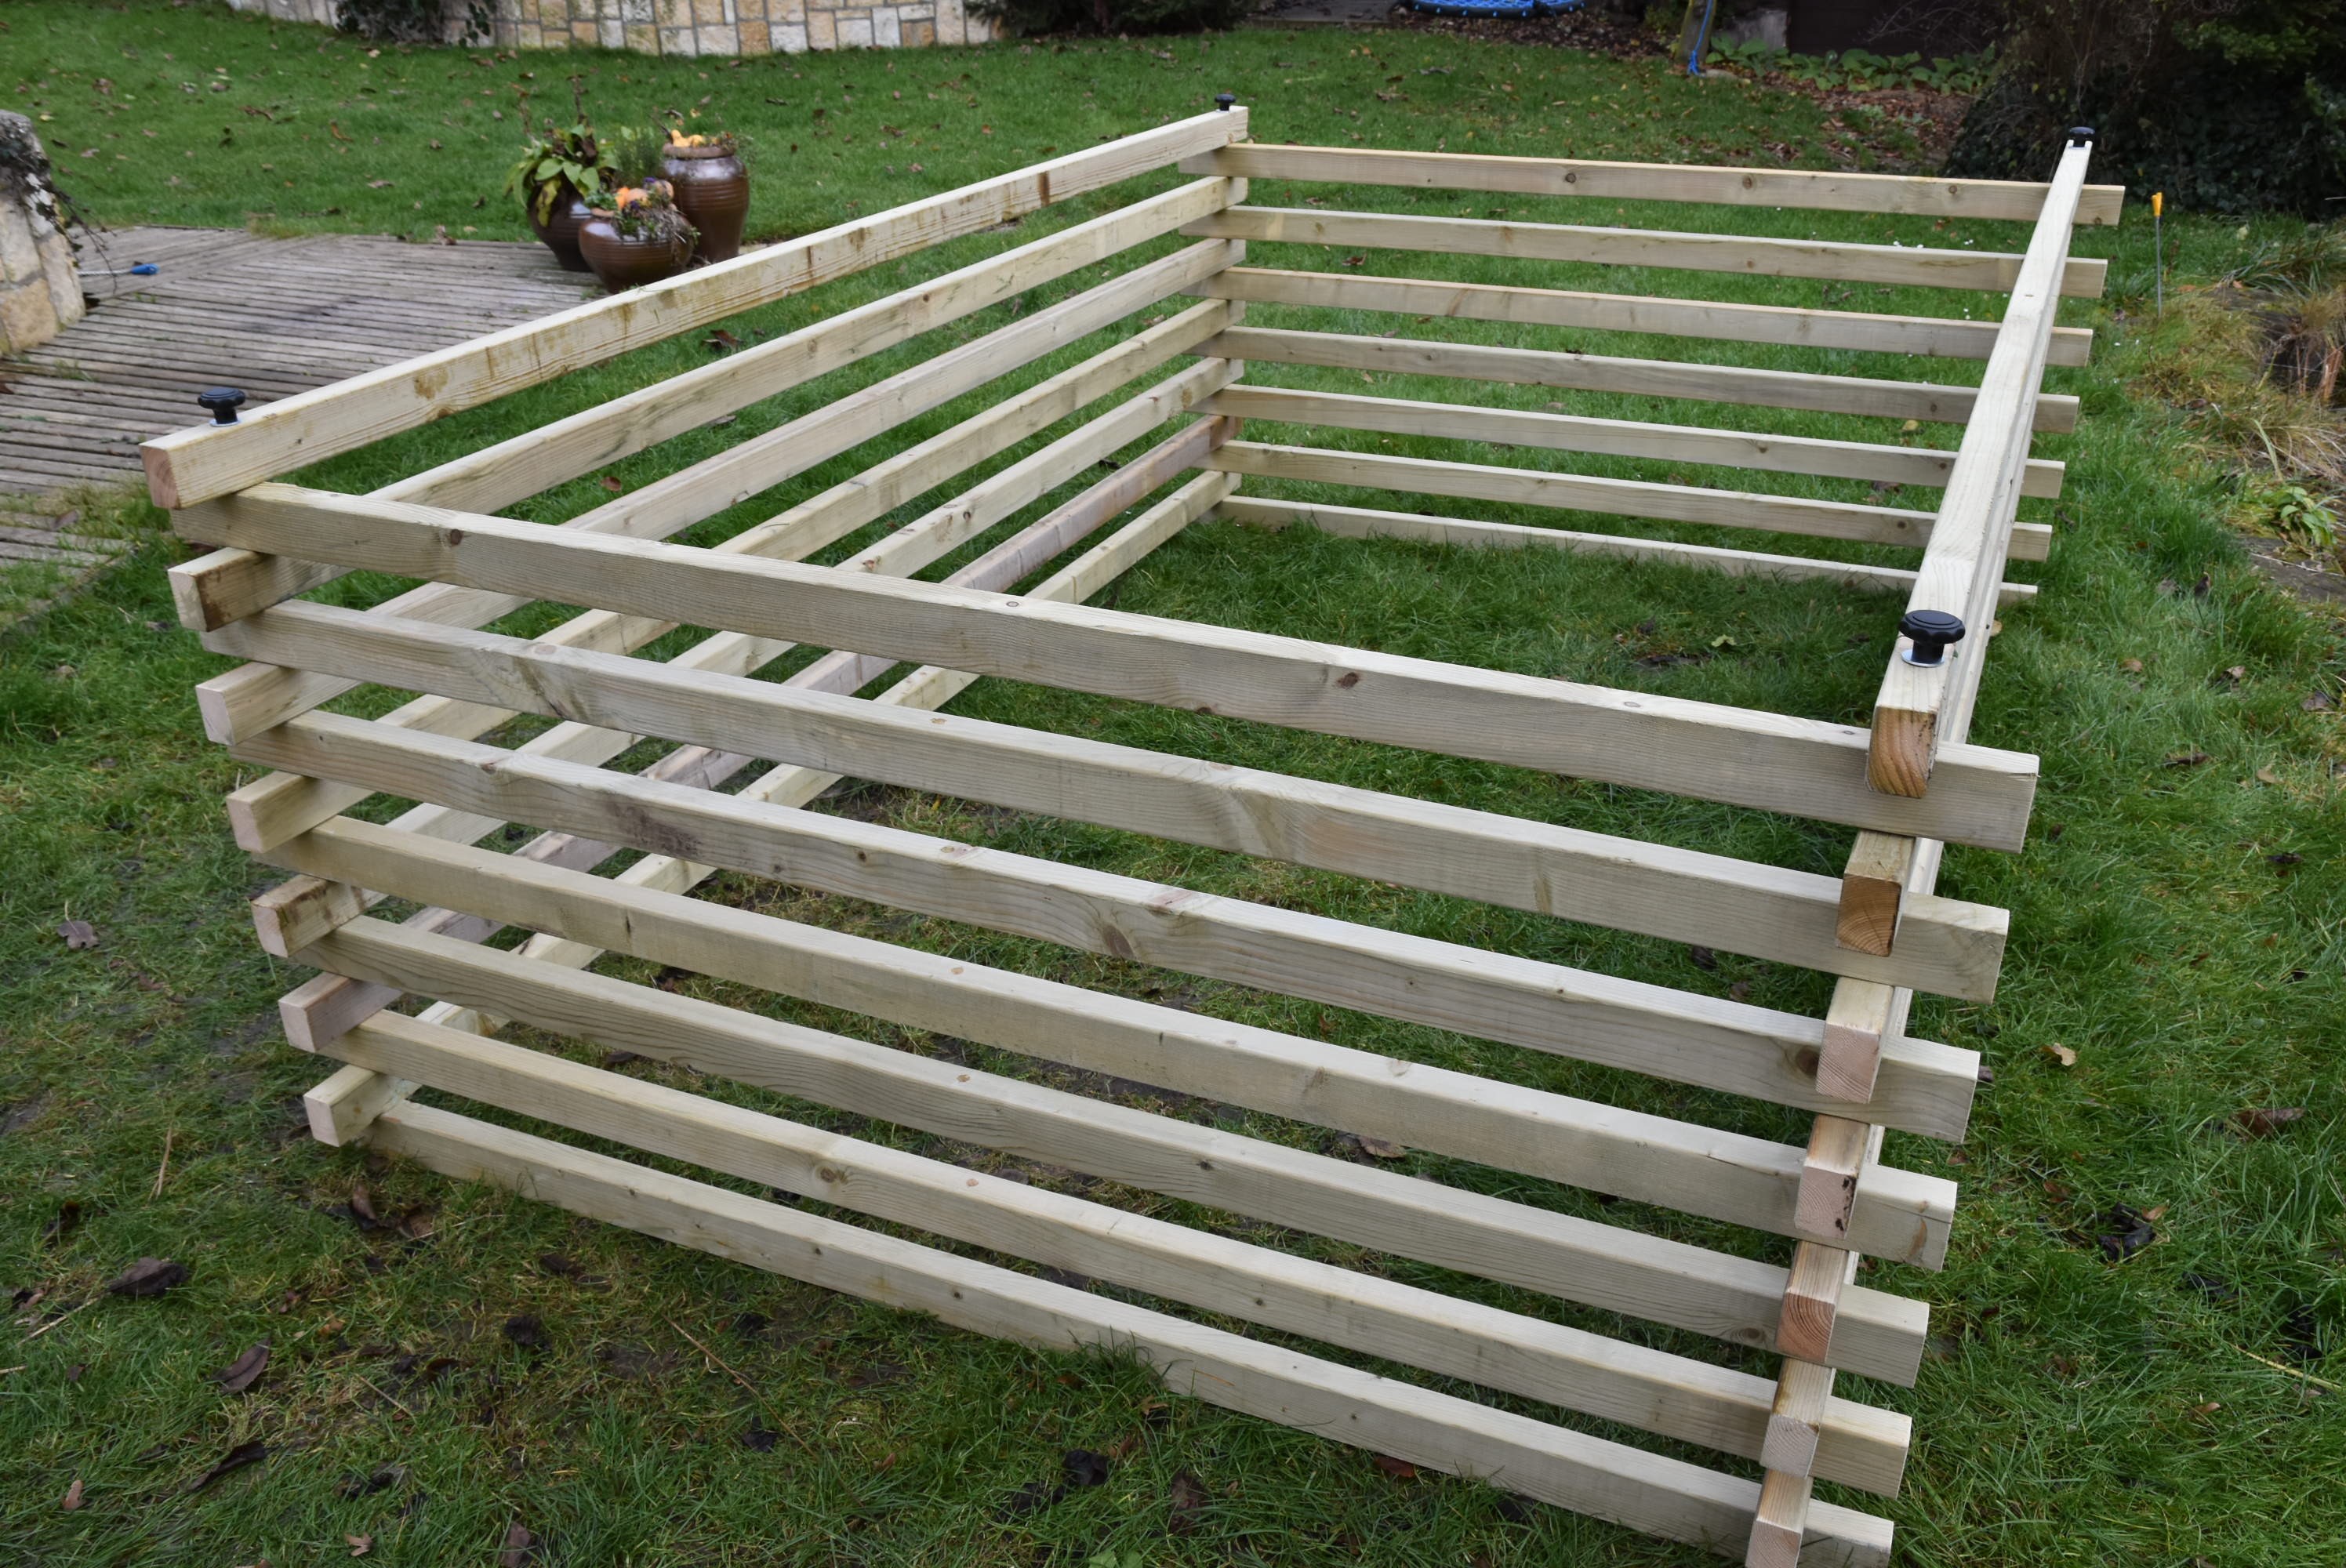 Dřevěný kompostér 300 x 200 cm